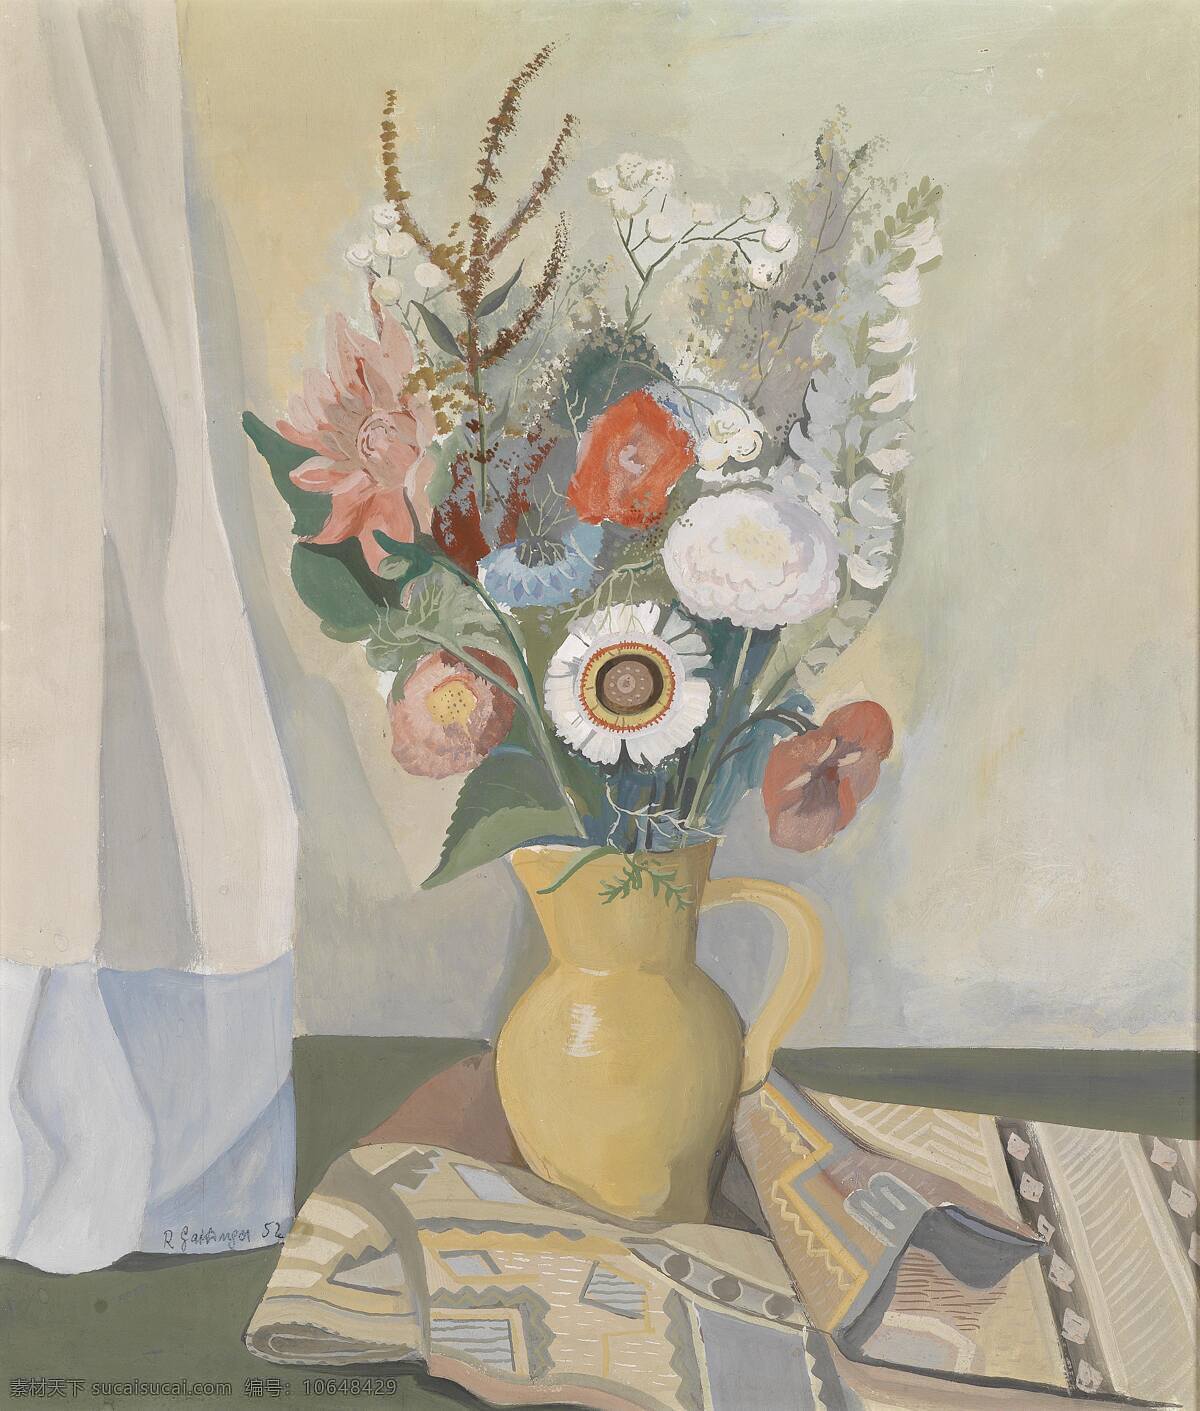 静物鲜花 混搭鲜花 花瓶 黄色花瓶 20世纪油画 油画 绘画书法 文化艺术